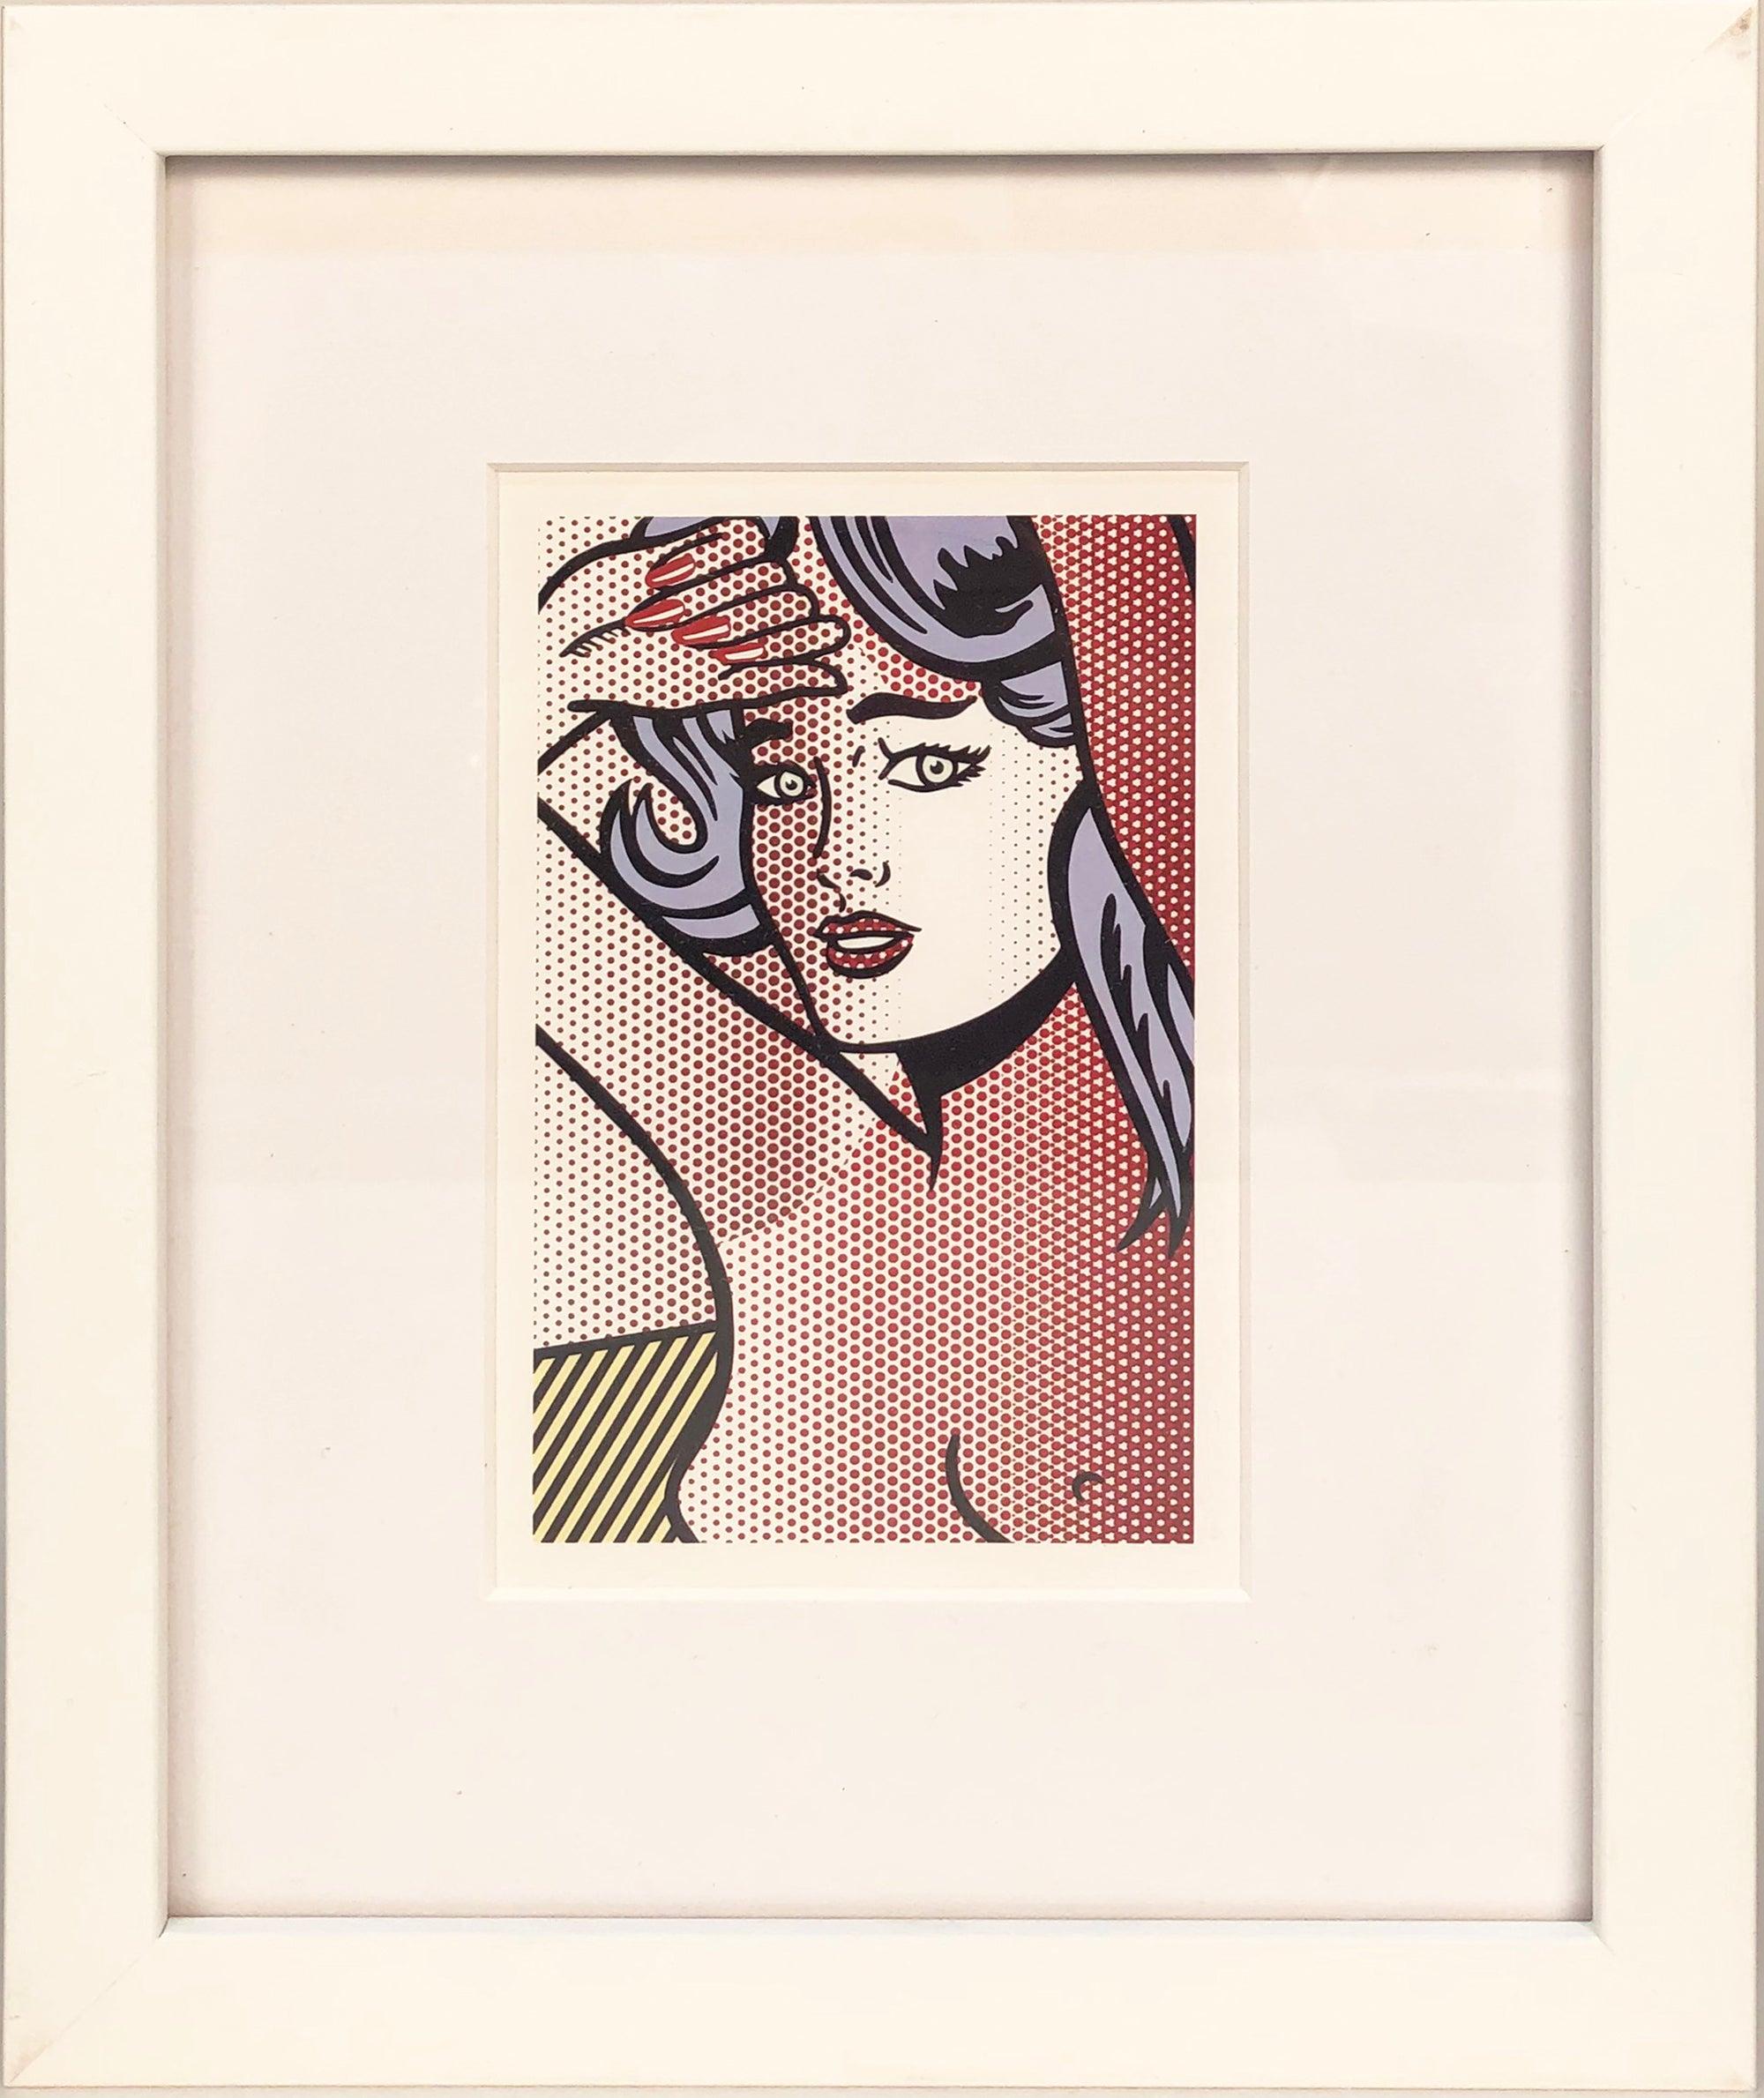 1997 Roy Lichtenstein 'Nude with Blue Hair' Invitation Framed